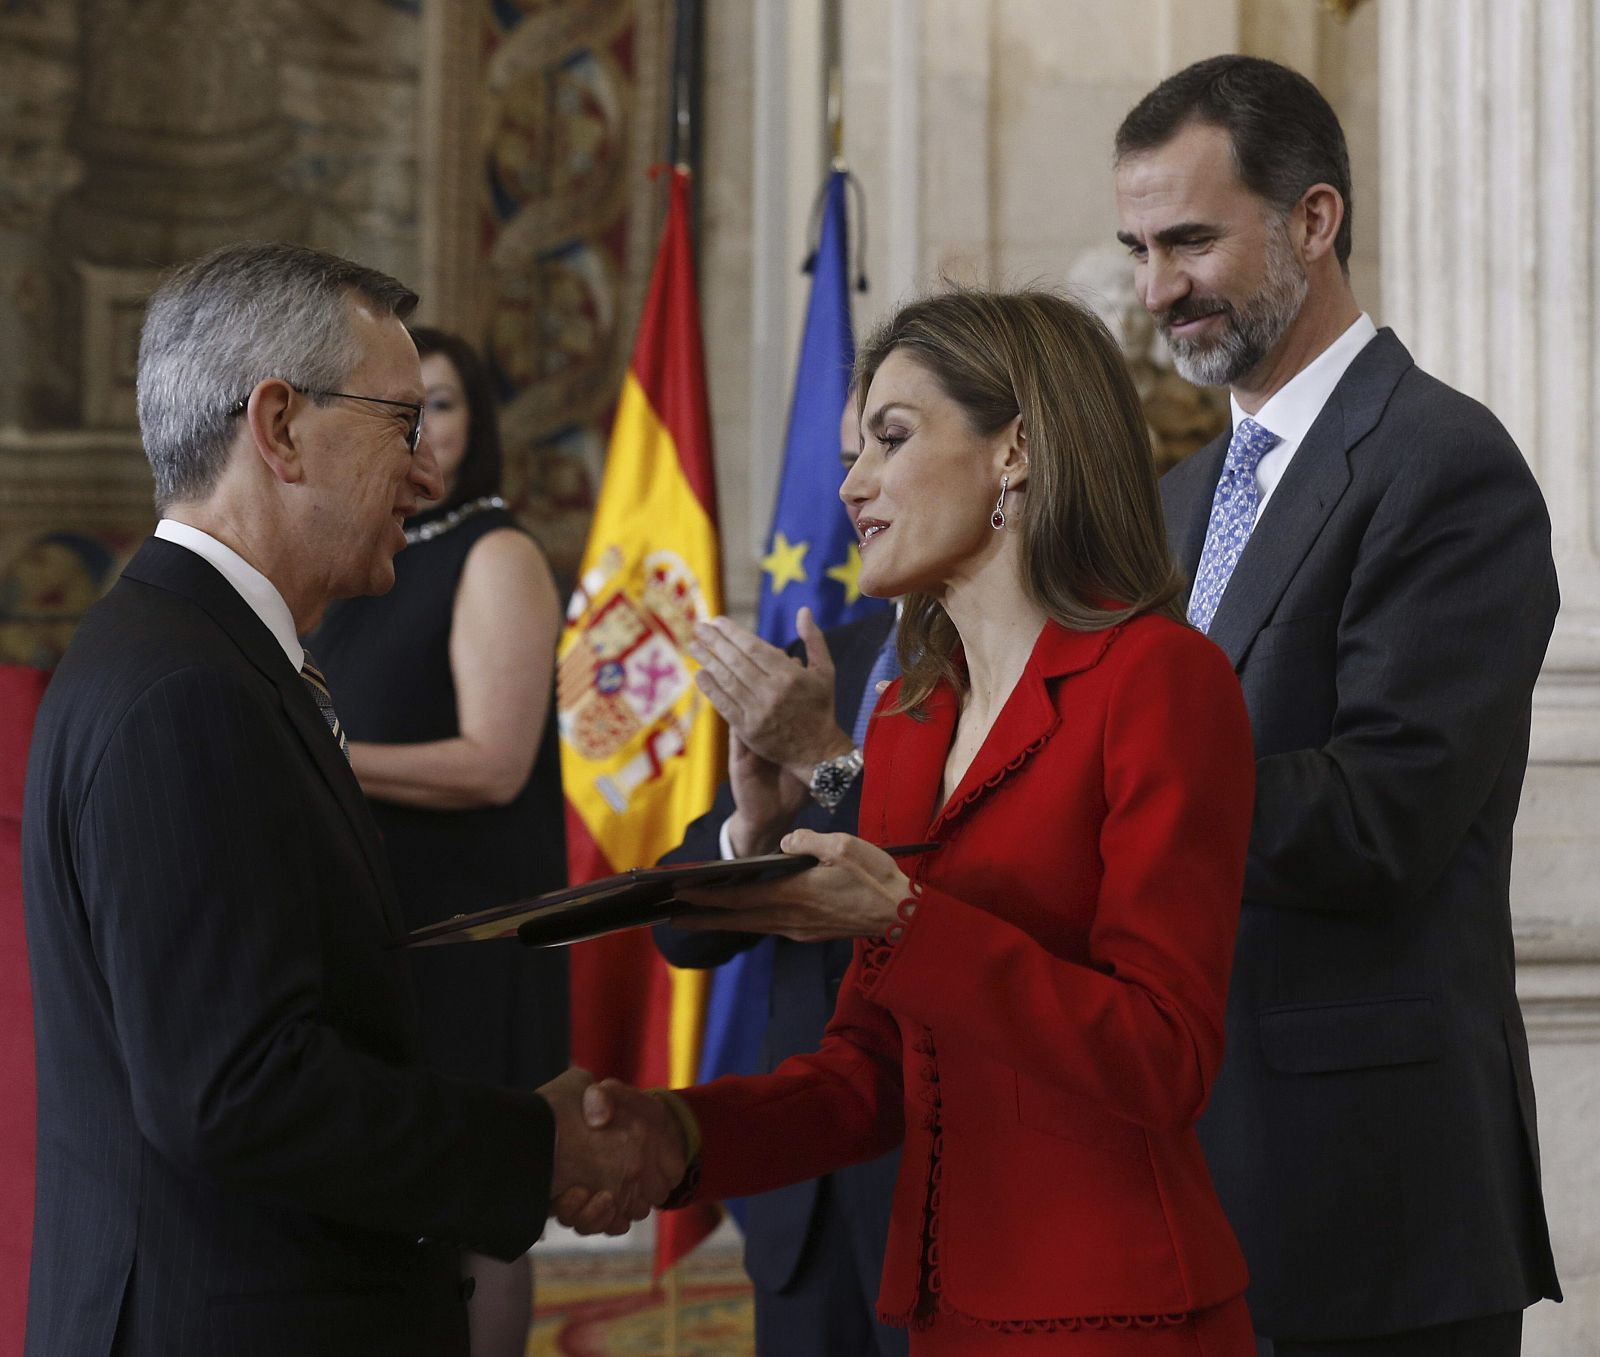 Los reyes don Felipe y doña Letizia, entregan la distinción al biólogo Joan Massagué Solé en los Premios Nacionales de Investigación 2014.